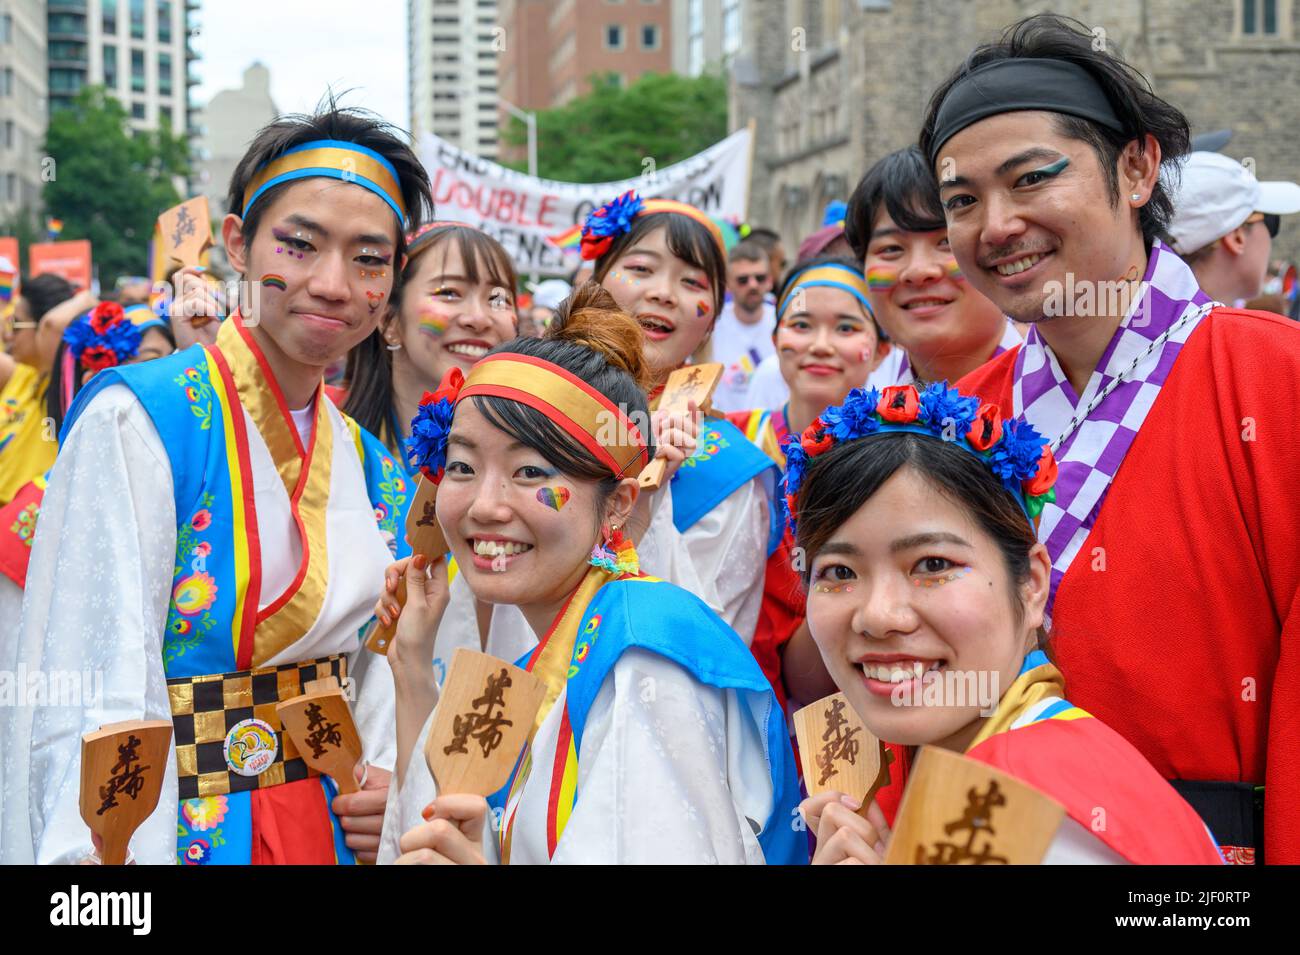 Gruppo di persone di discendenza asiatica che indossano abiti colorati durante la Pride Parade Foto Stock